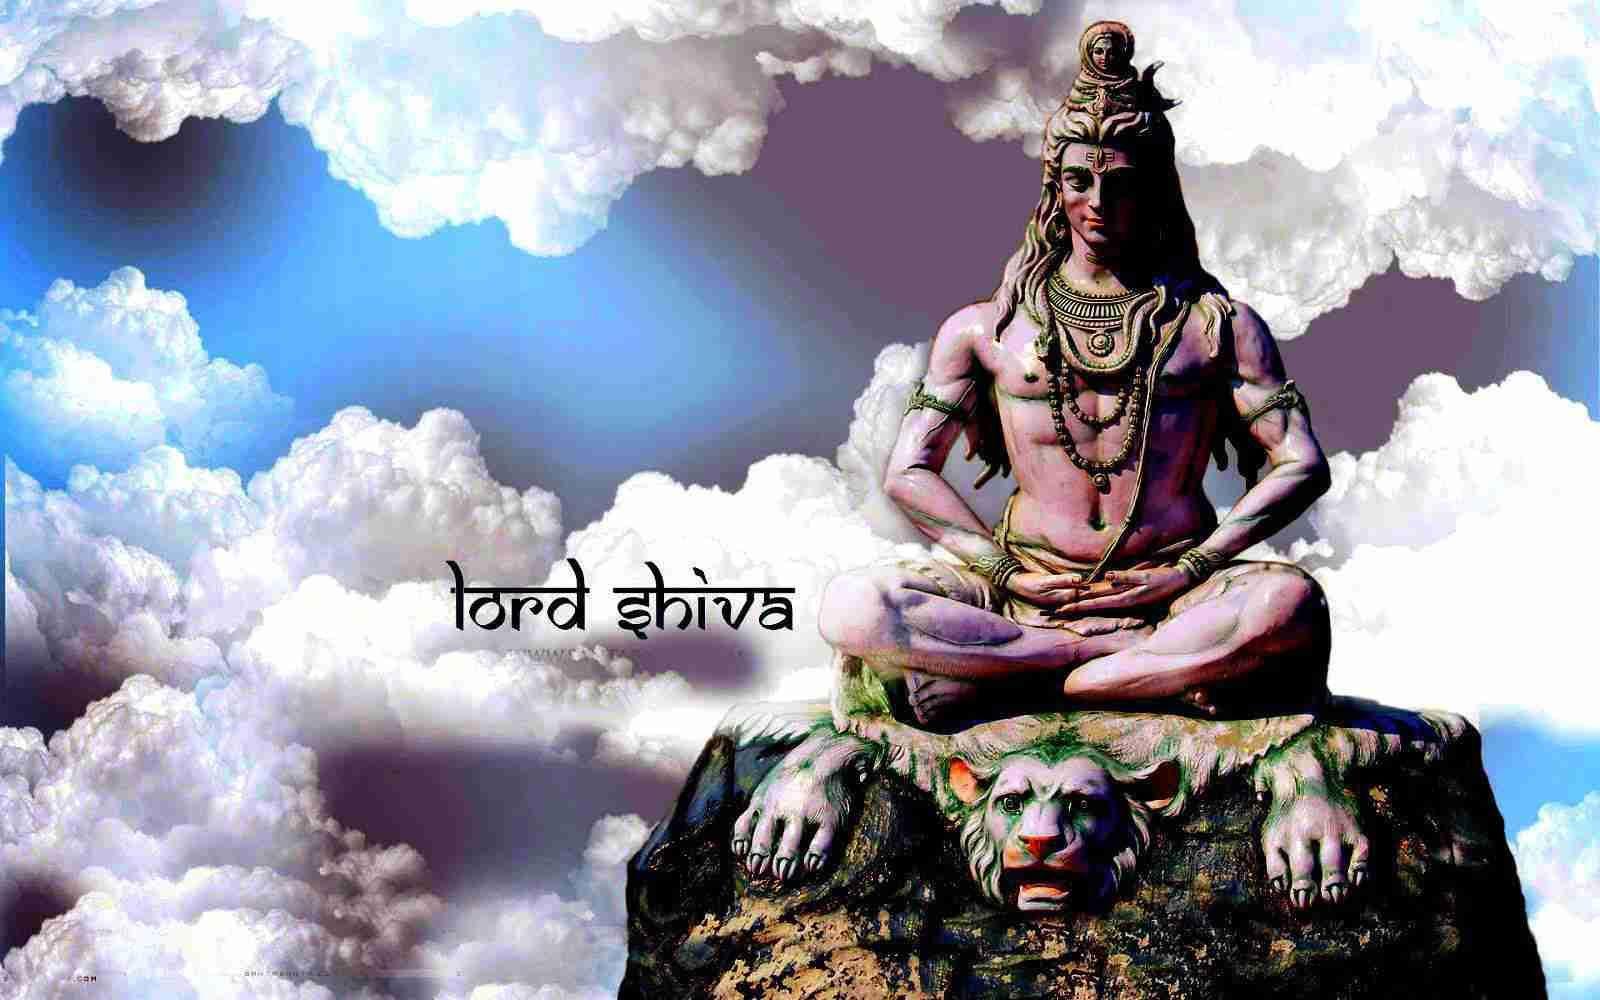 1600x1000 Tải xuống ảnh HD của Bhole Baba tốt nhất vào năm 2020, ảnh HD của chúa tể shiva.  Chúa shiva hình ảnh HD, hình ảnh HD, hình ảnh Ganesha